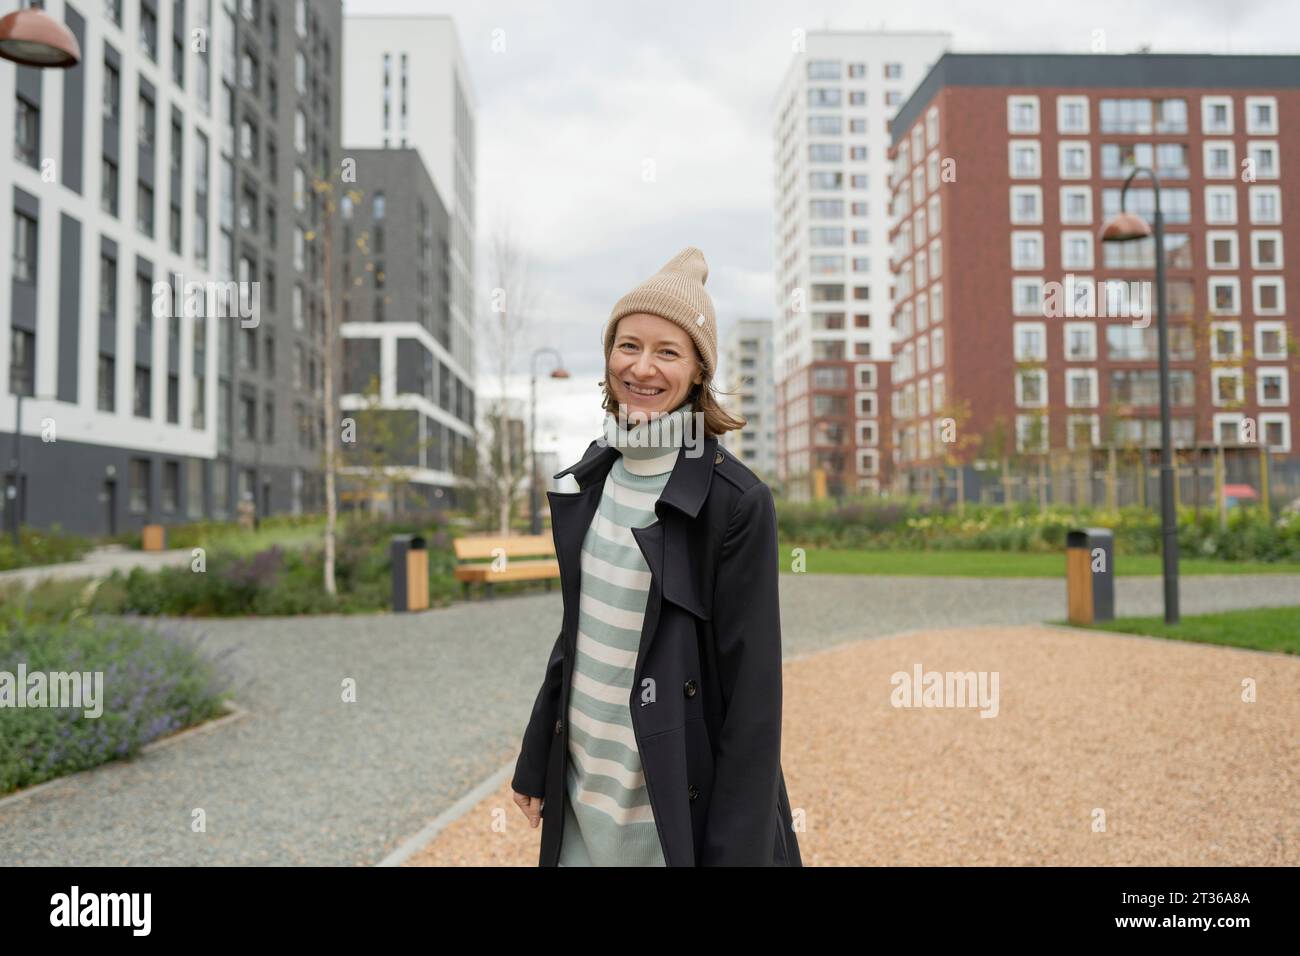 Lächelnde Frau mit Strickmütze und Regenmantel in der Stadt Stockfoto